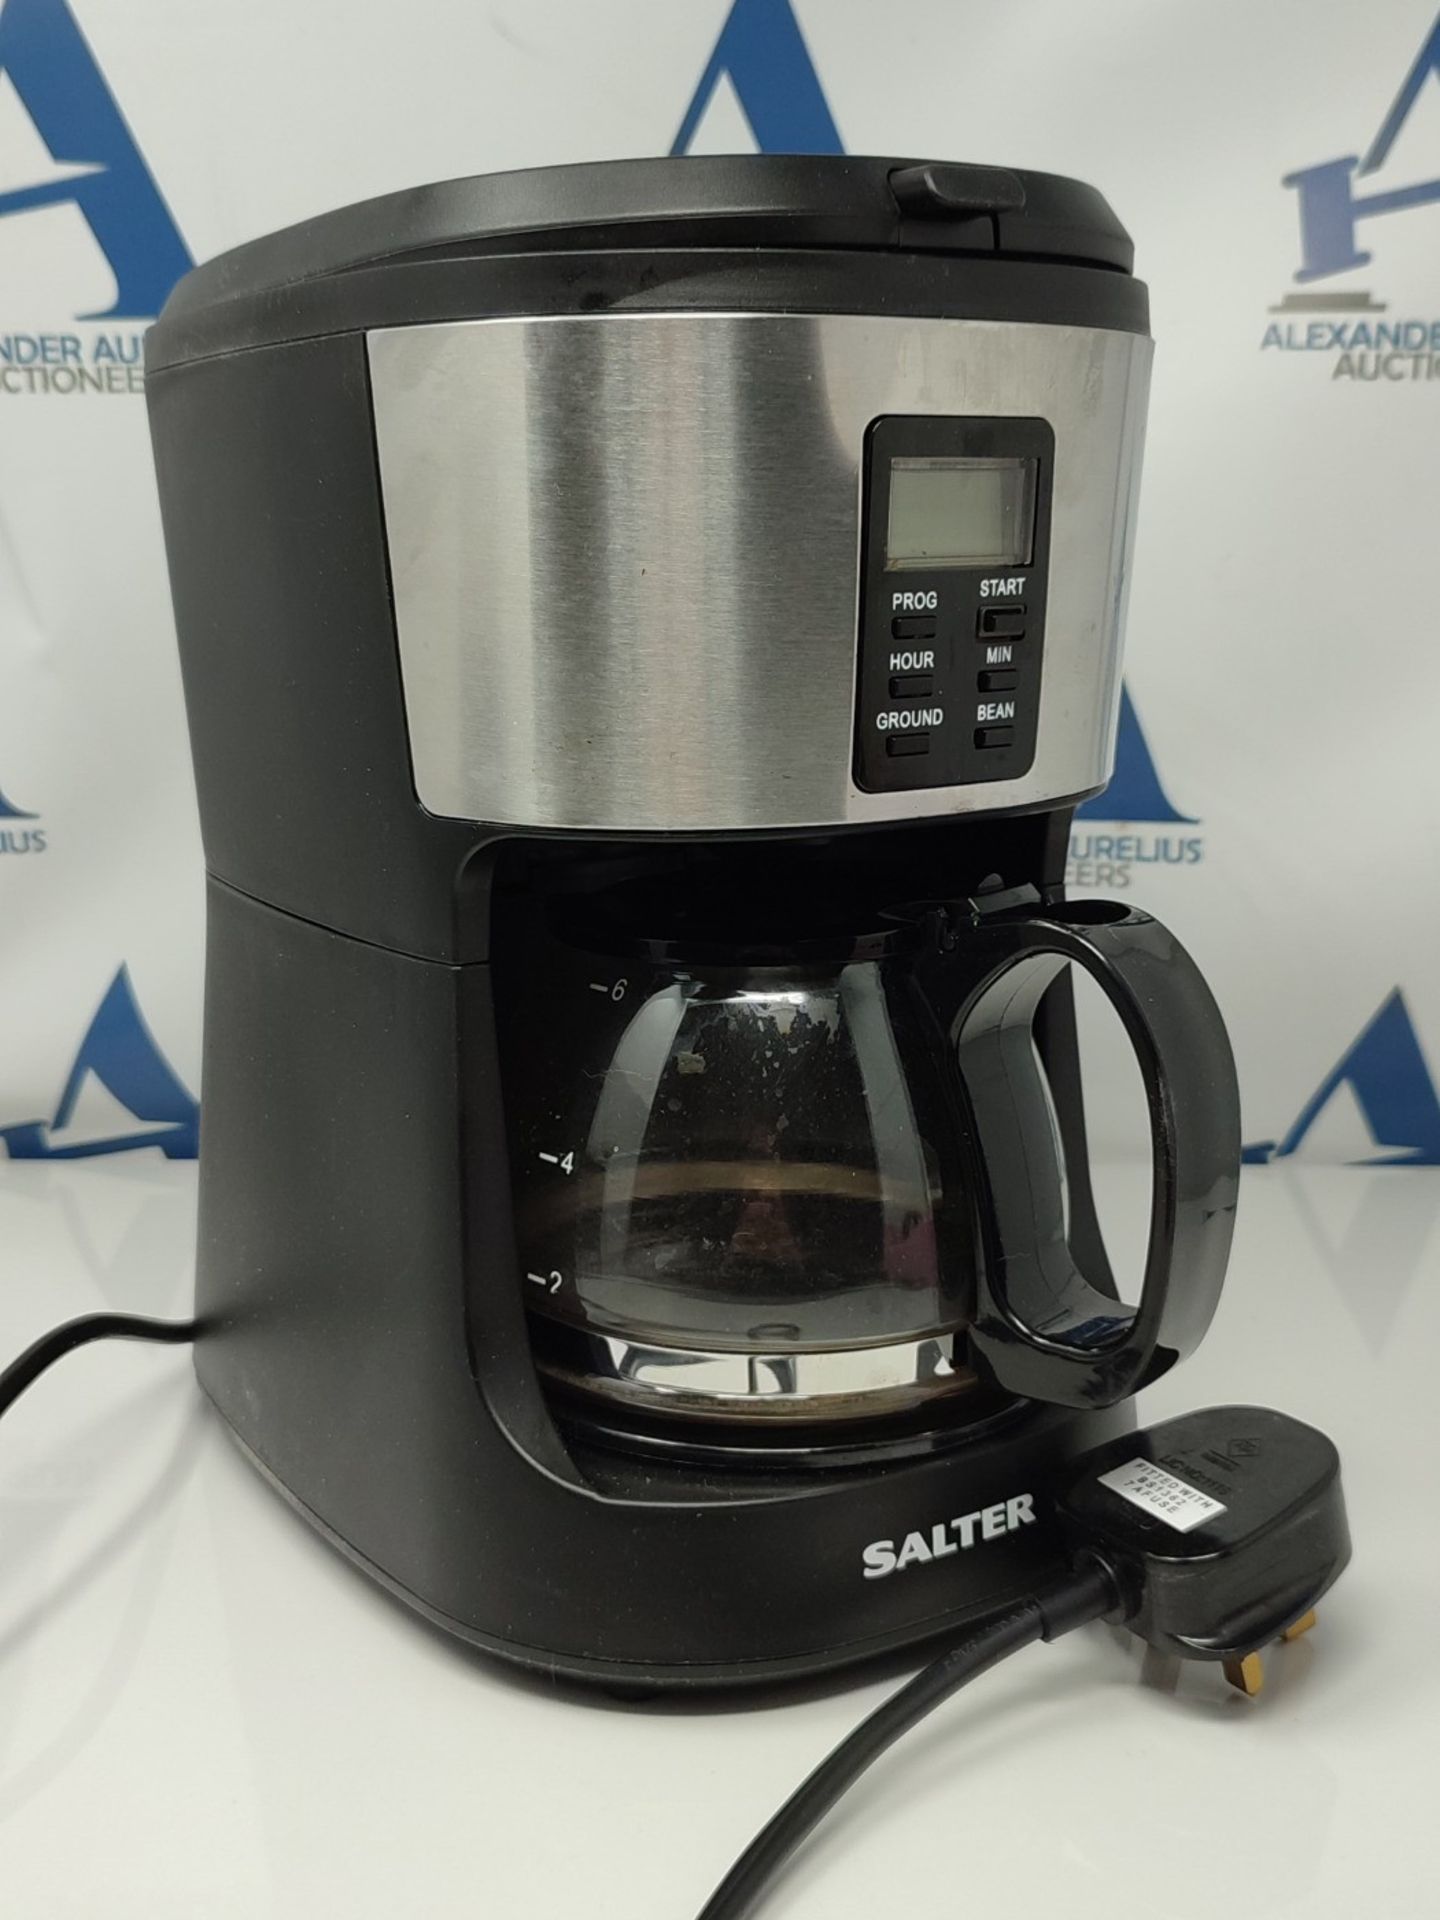 RRP £51.00 Salter EK4368 Bean to Jug Coffee Machine  Electric Coffee Grinder, 750ml Filter Cof - Image 2 of 2